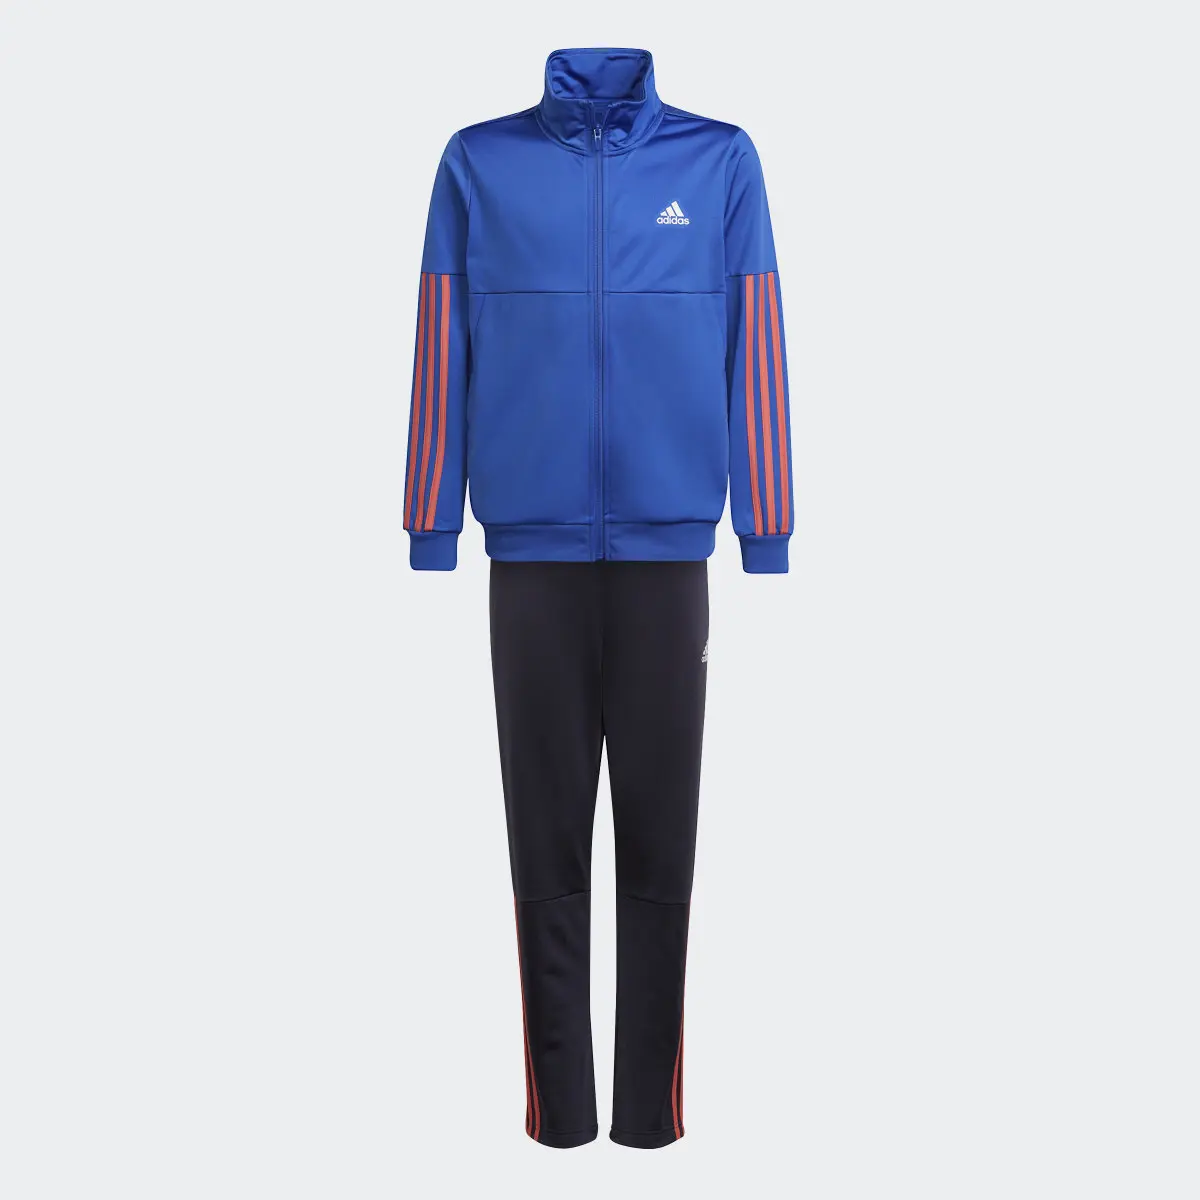 Adidas 3-Stripes Team Track Suit. 1